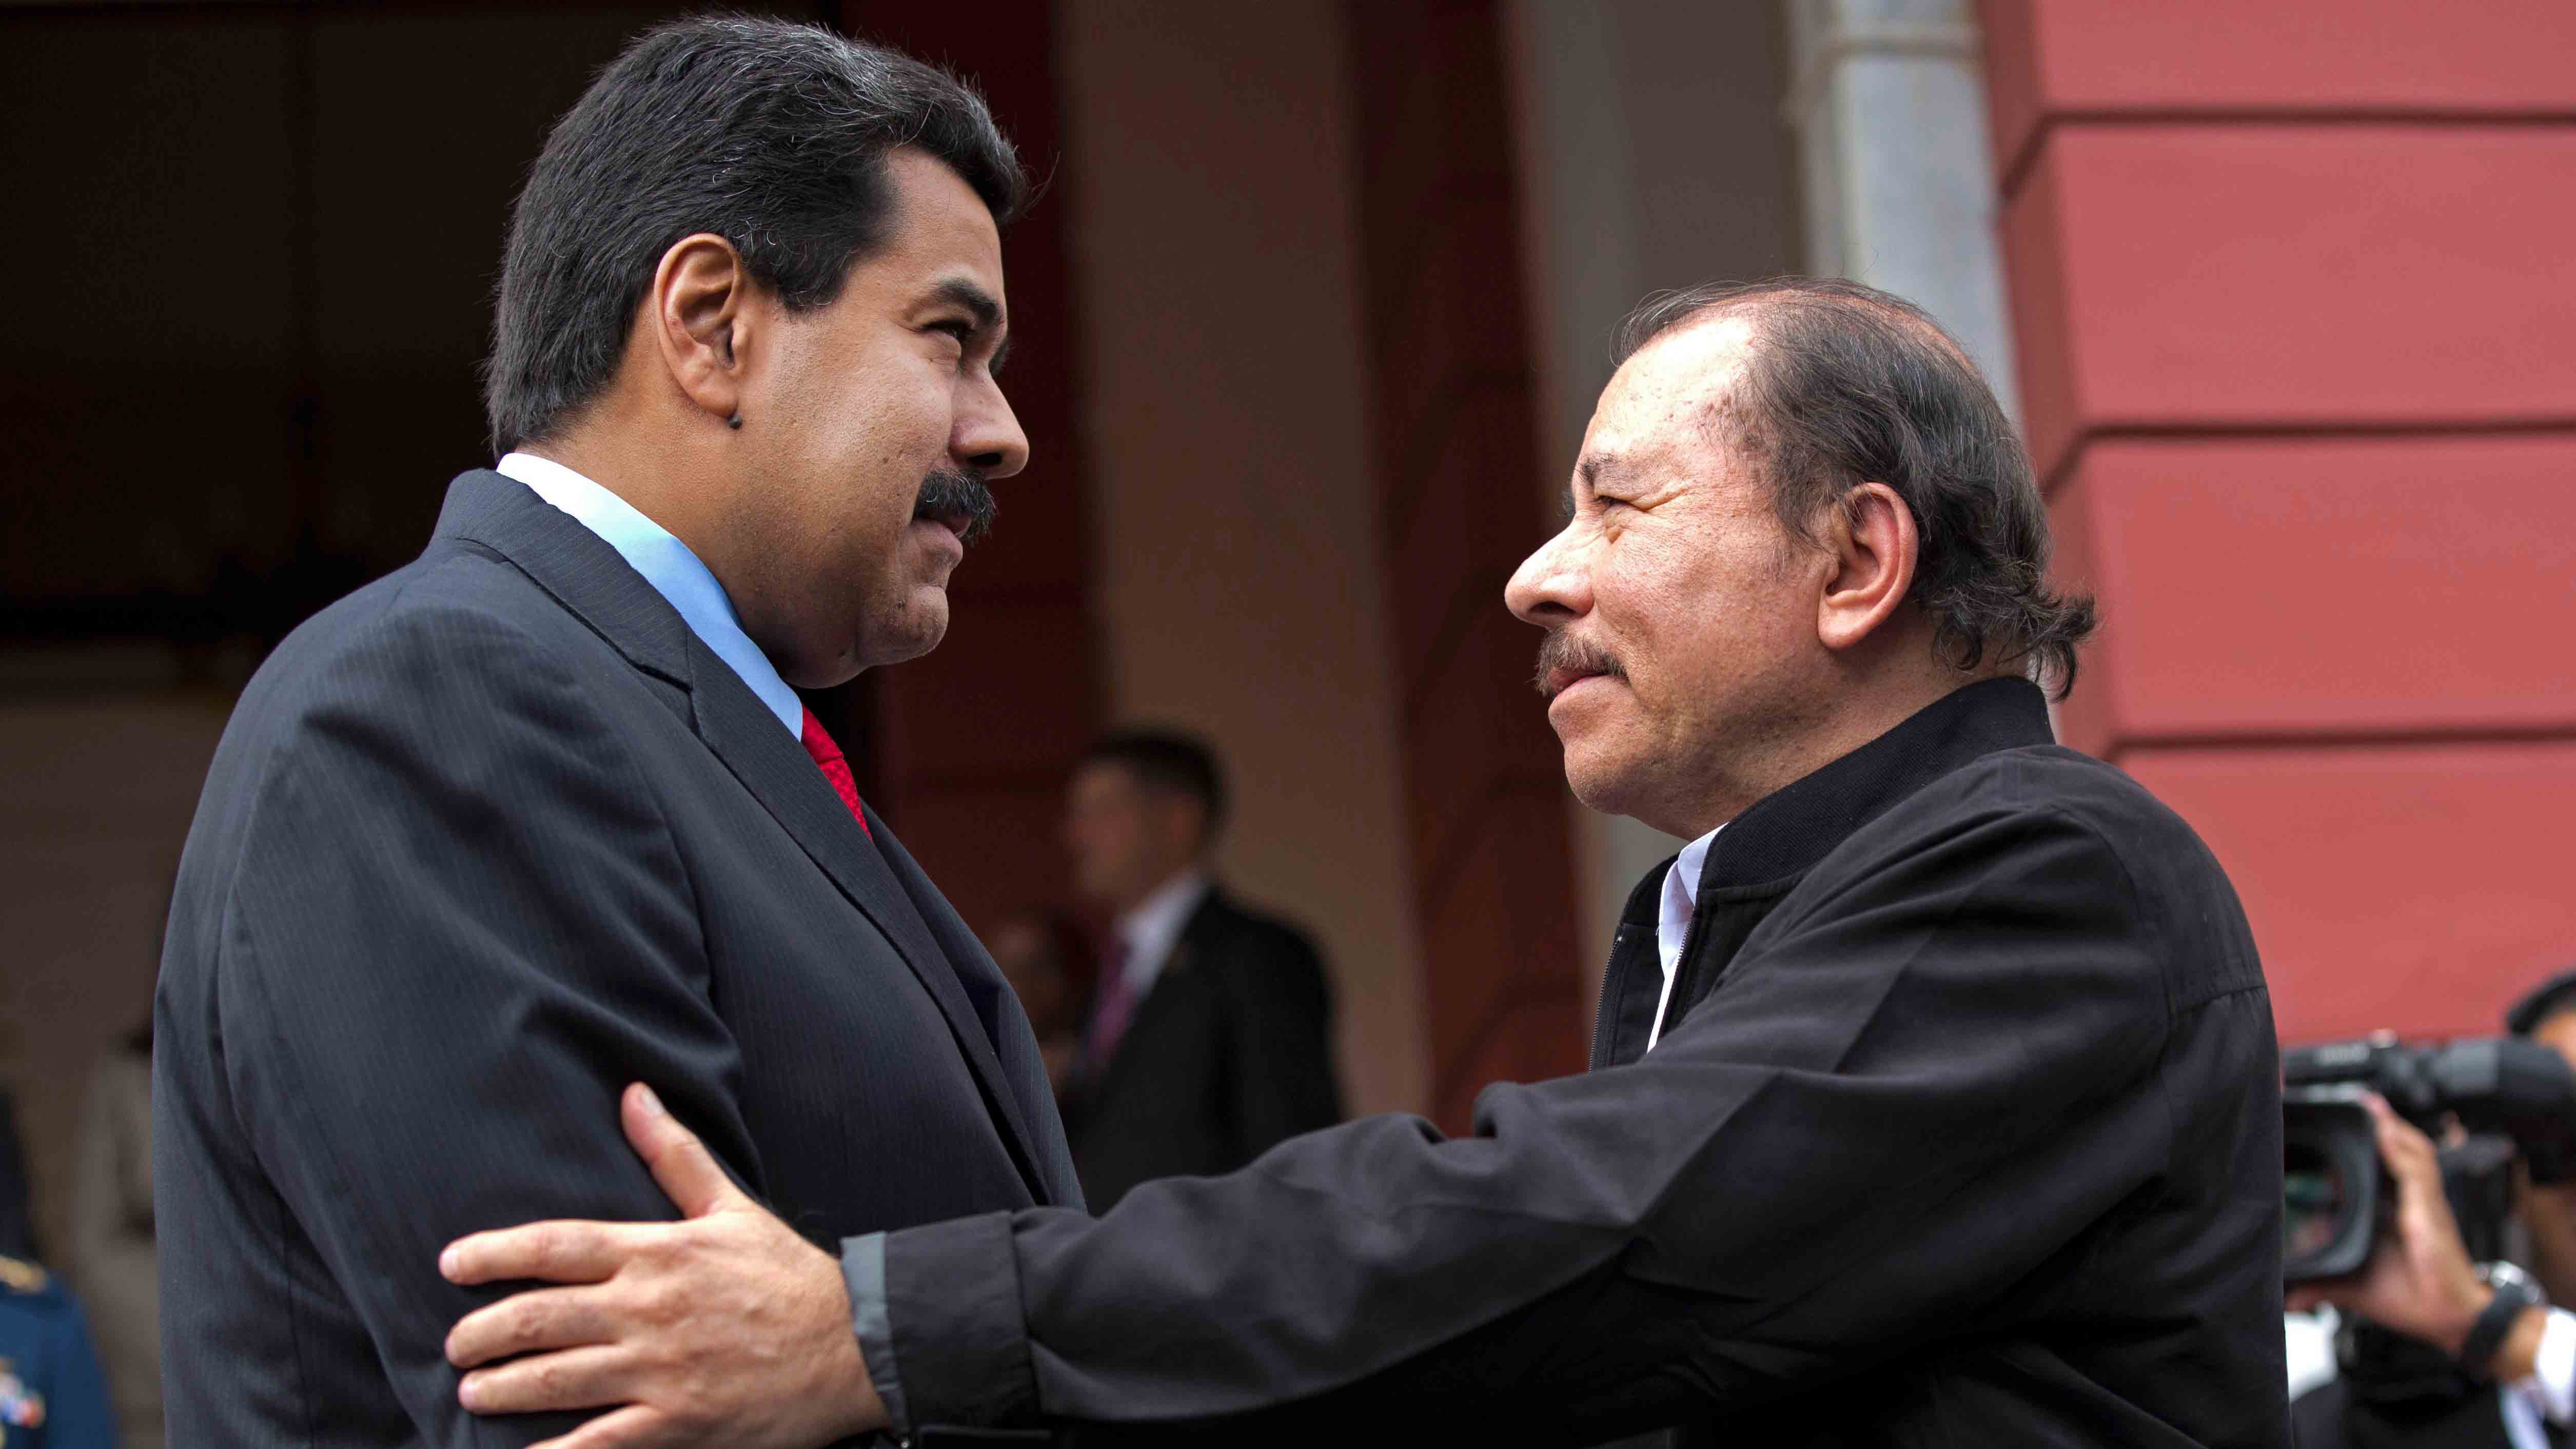 Elecciones en Nicaragua, el reflejo de la Venezuela sin democracia